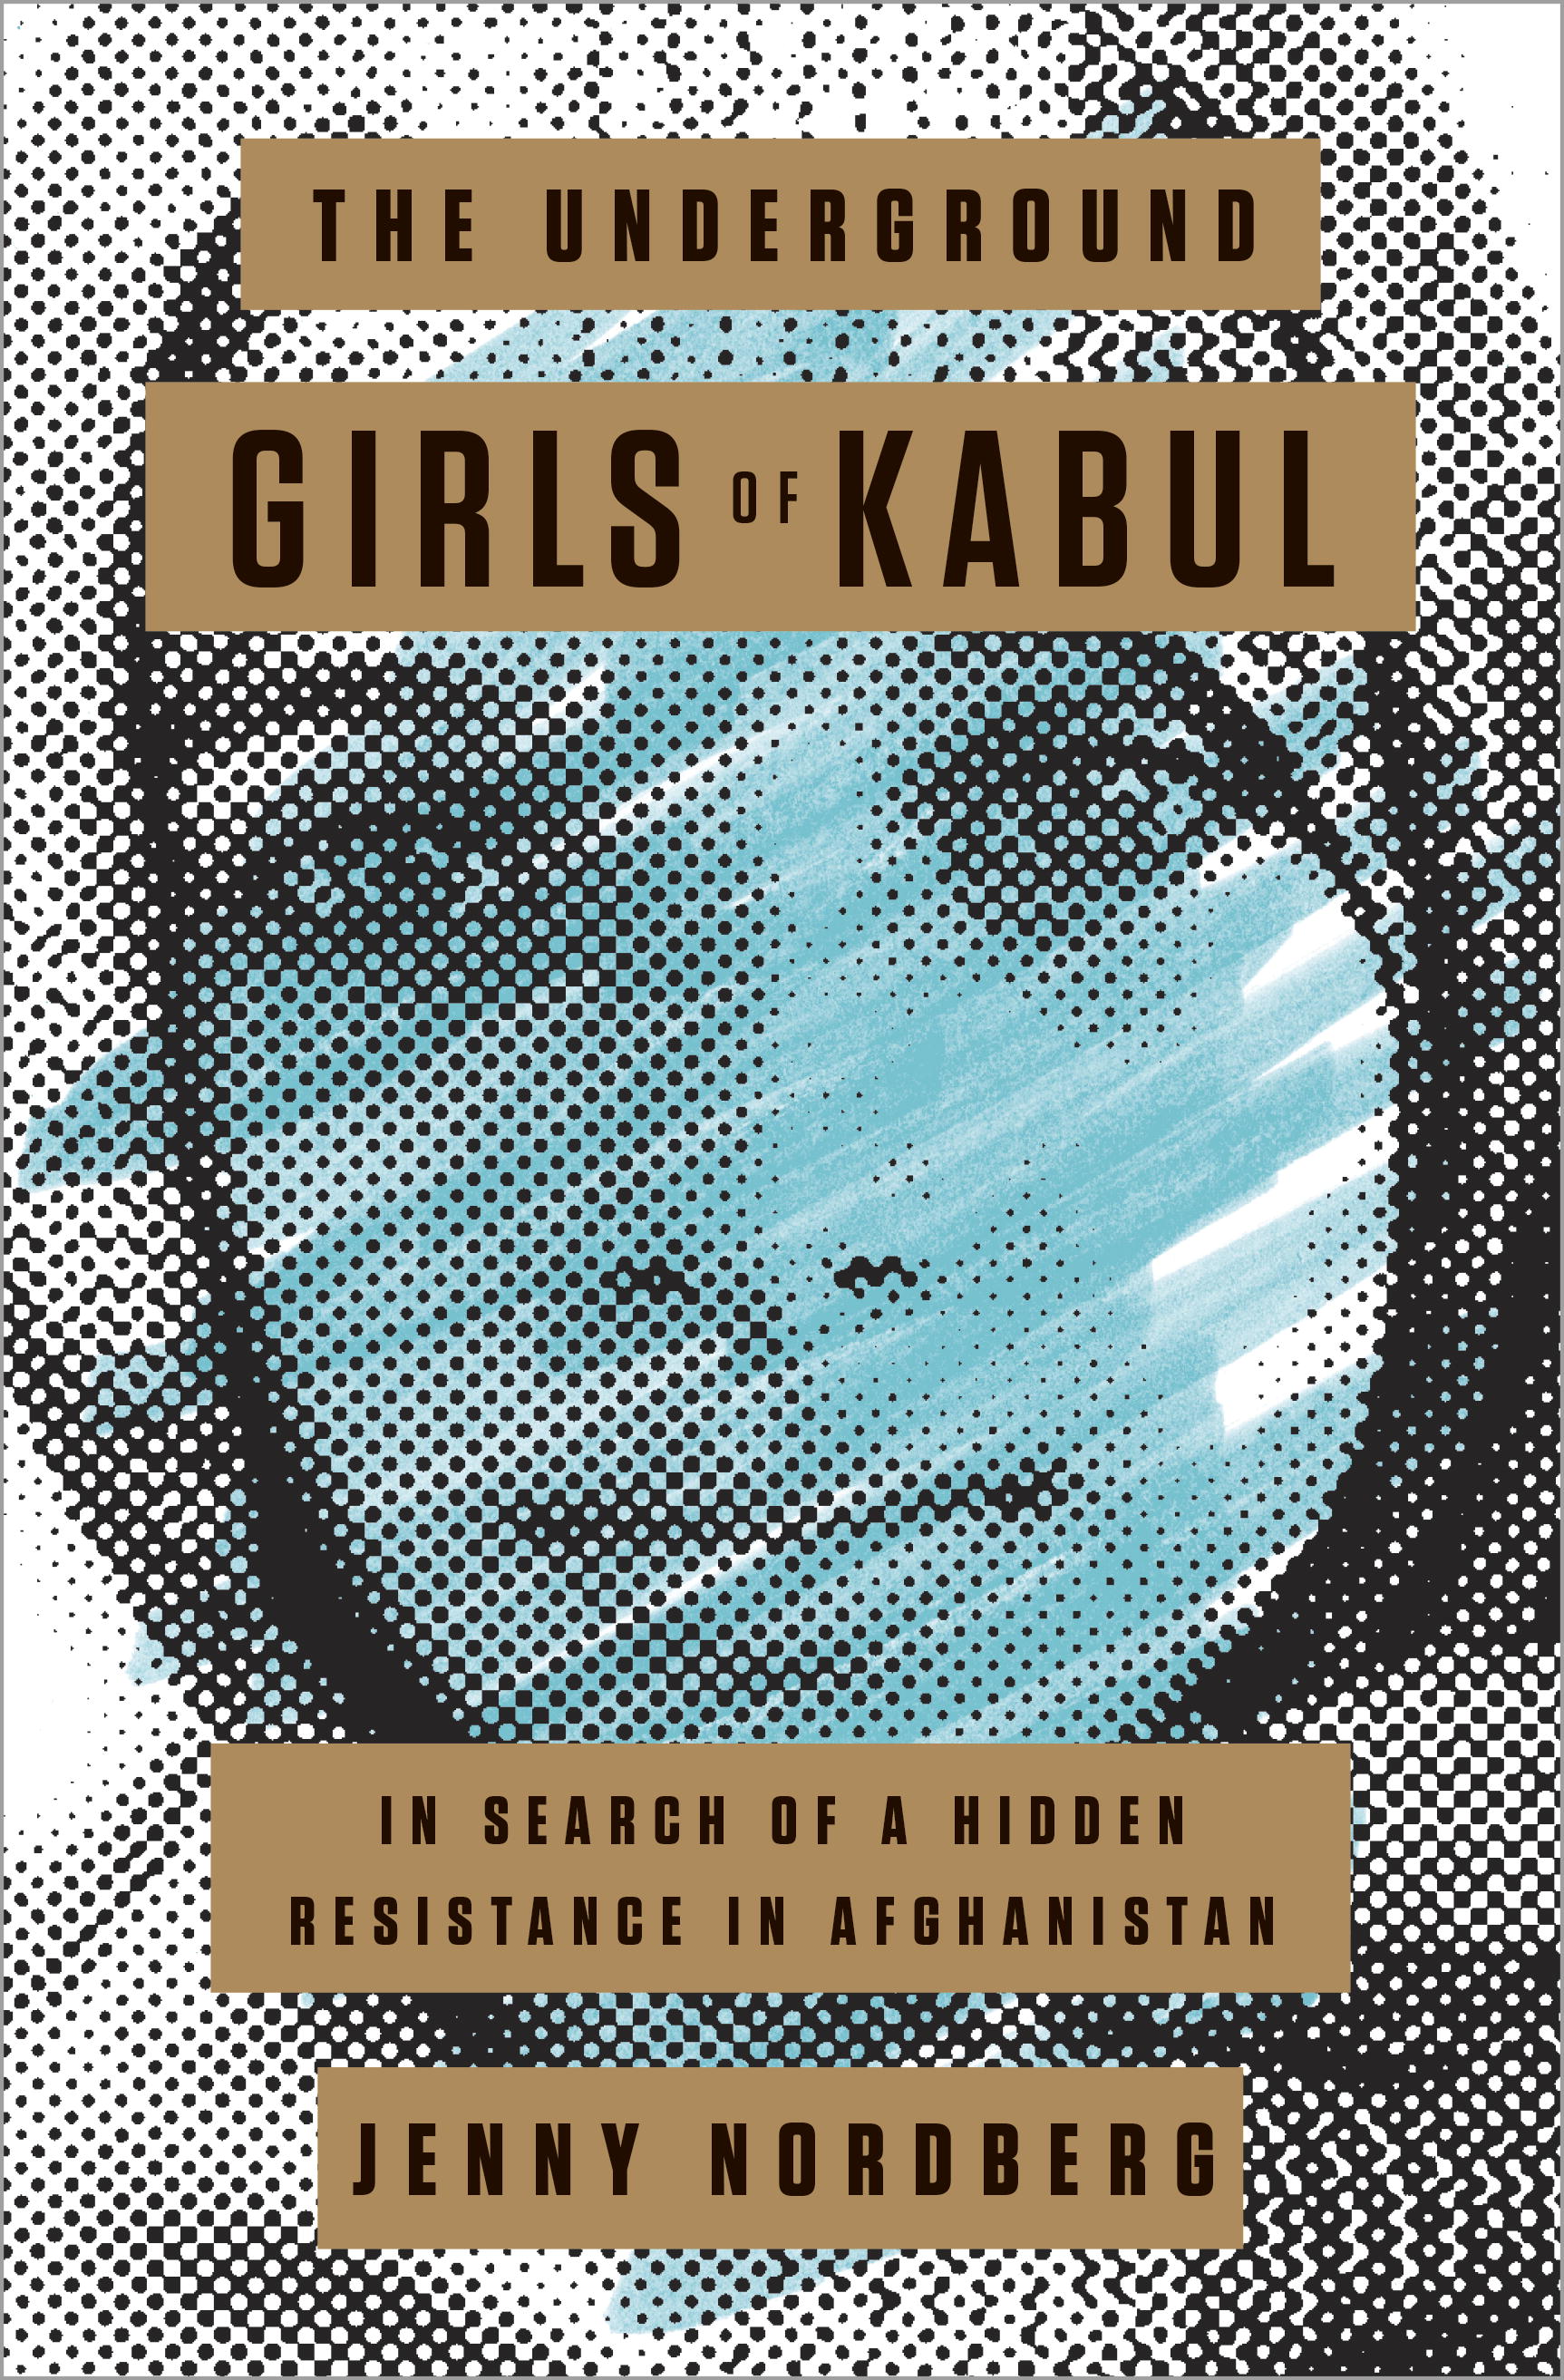 The Underground Girls of Kabul